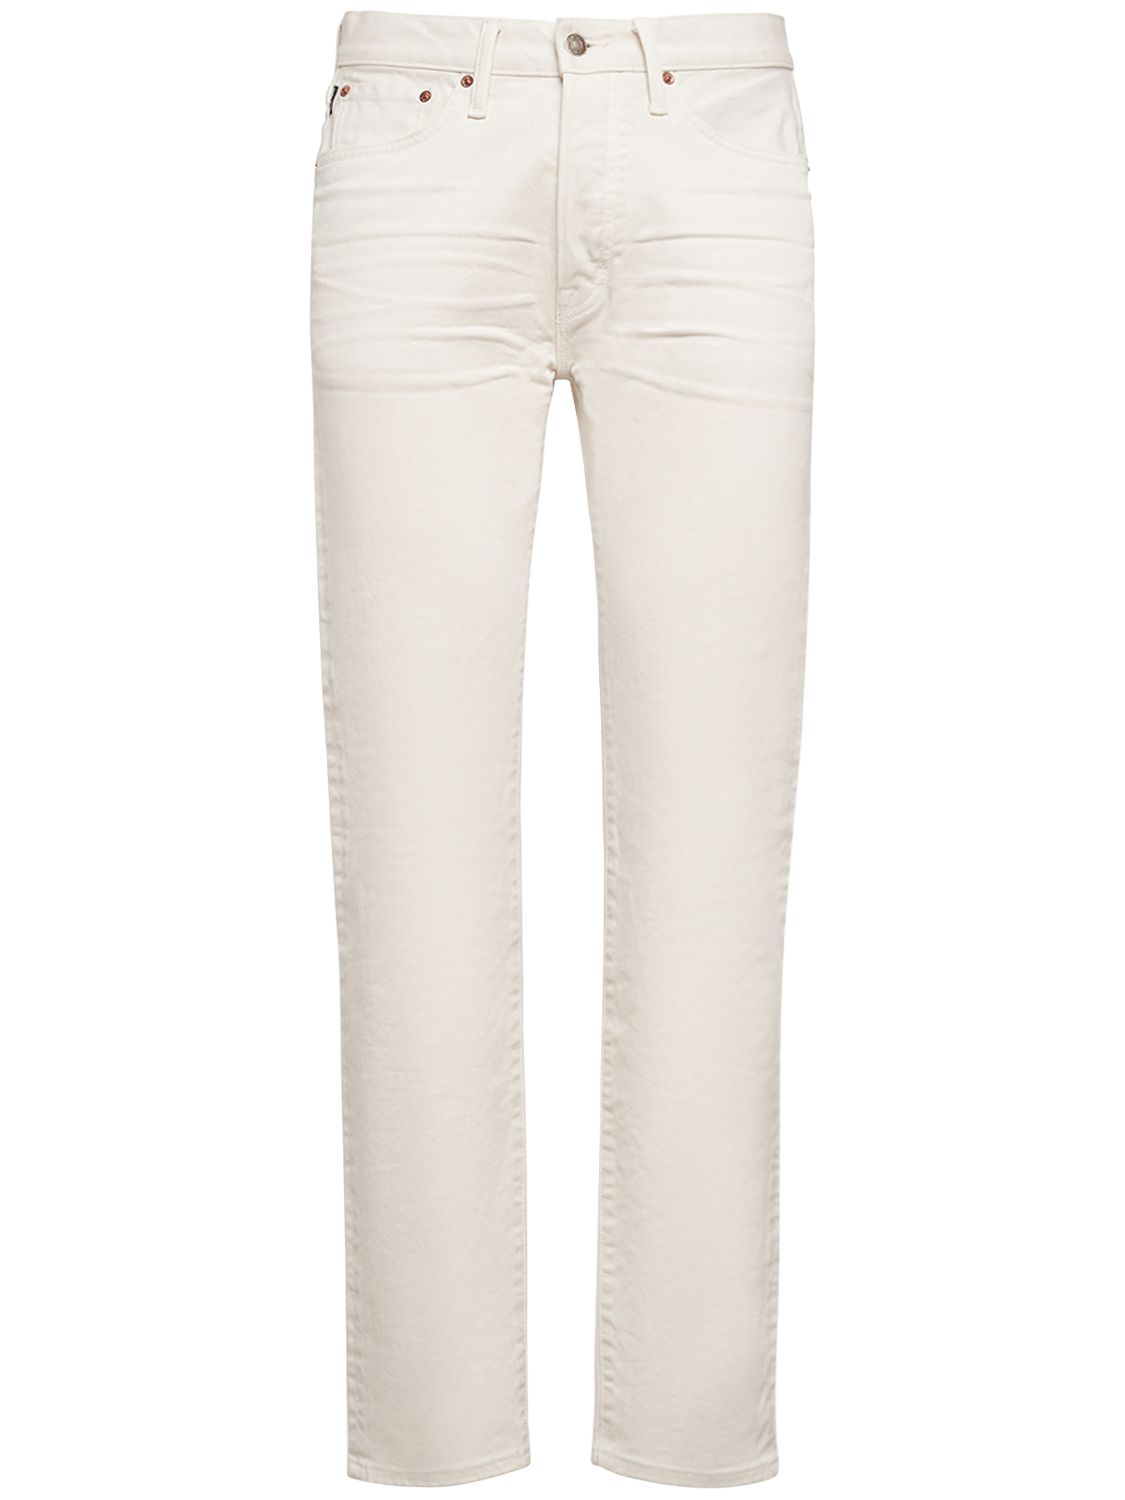 Jeans Standard Fit In Twill Di Denim - TOM FORD - Modalova